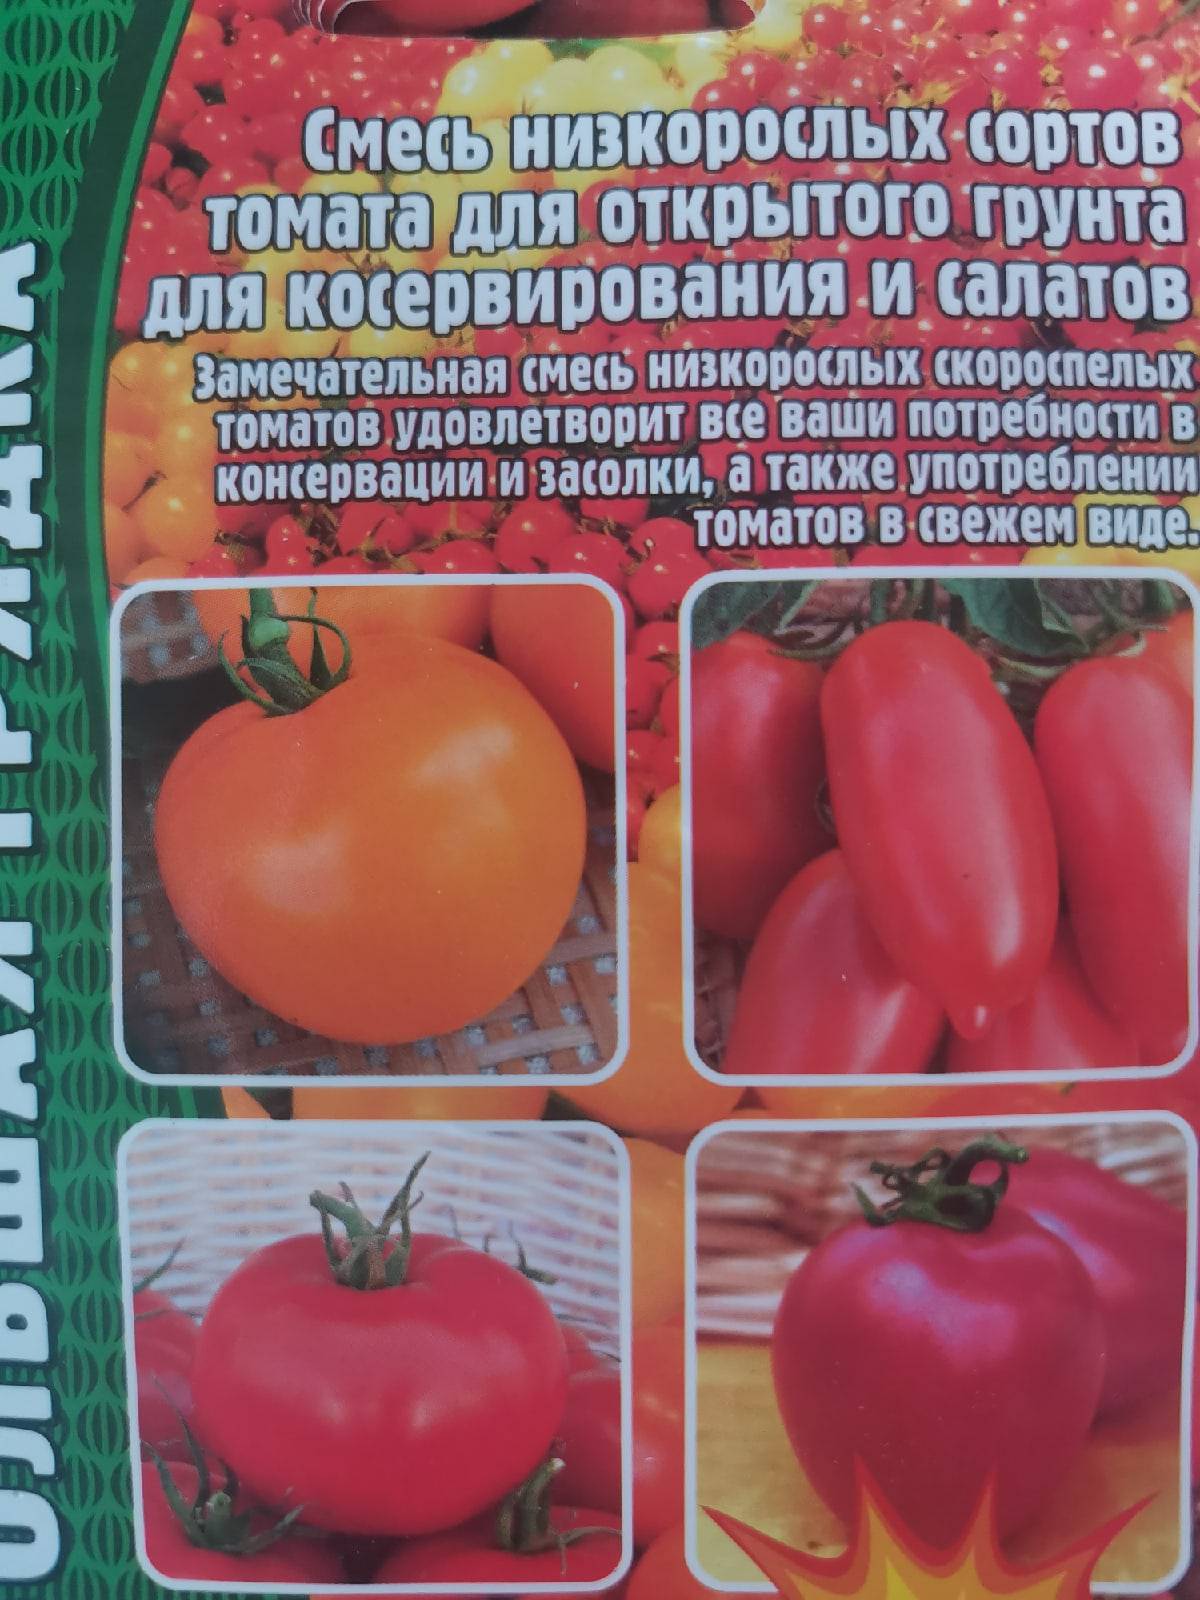 Томат красавец мясистый: отзывы об урожайности помидоров, характеристика и описание сорта, фото семян седек